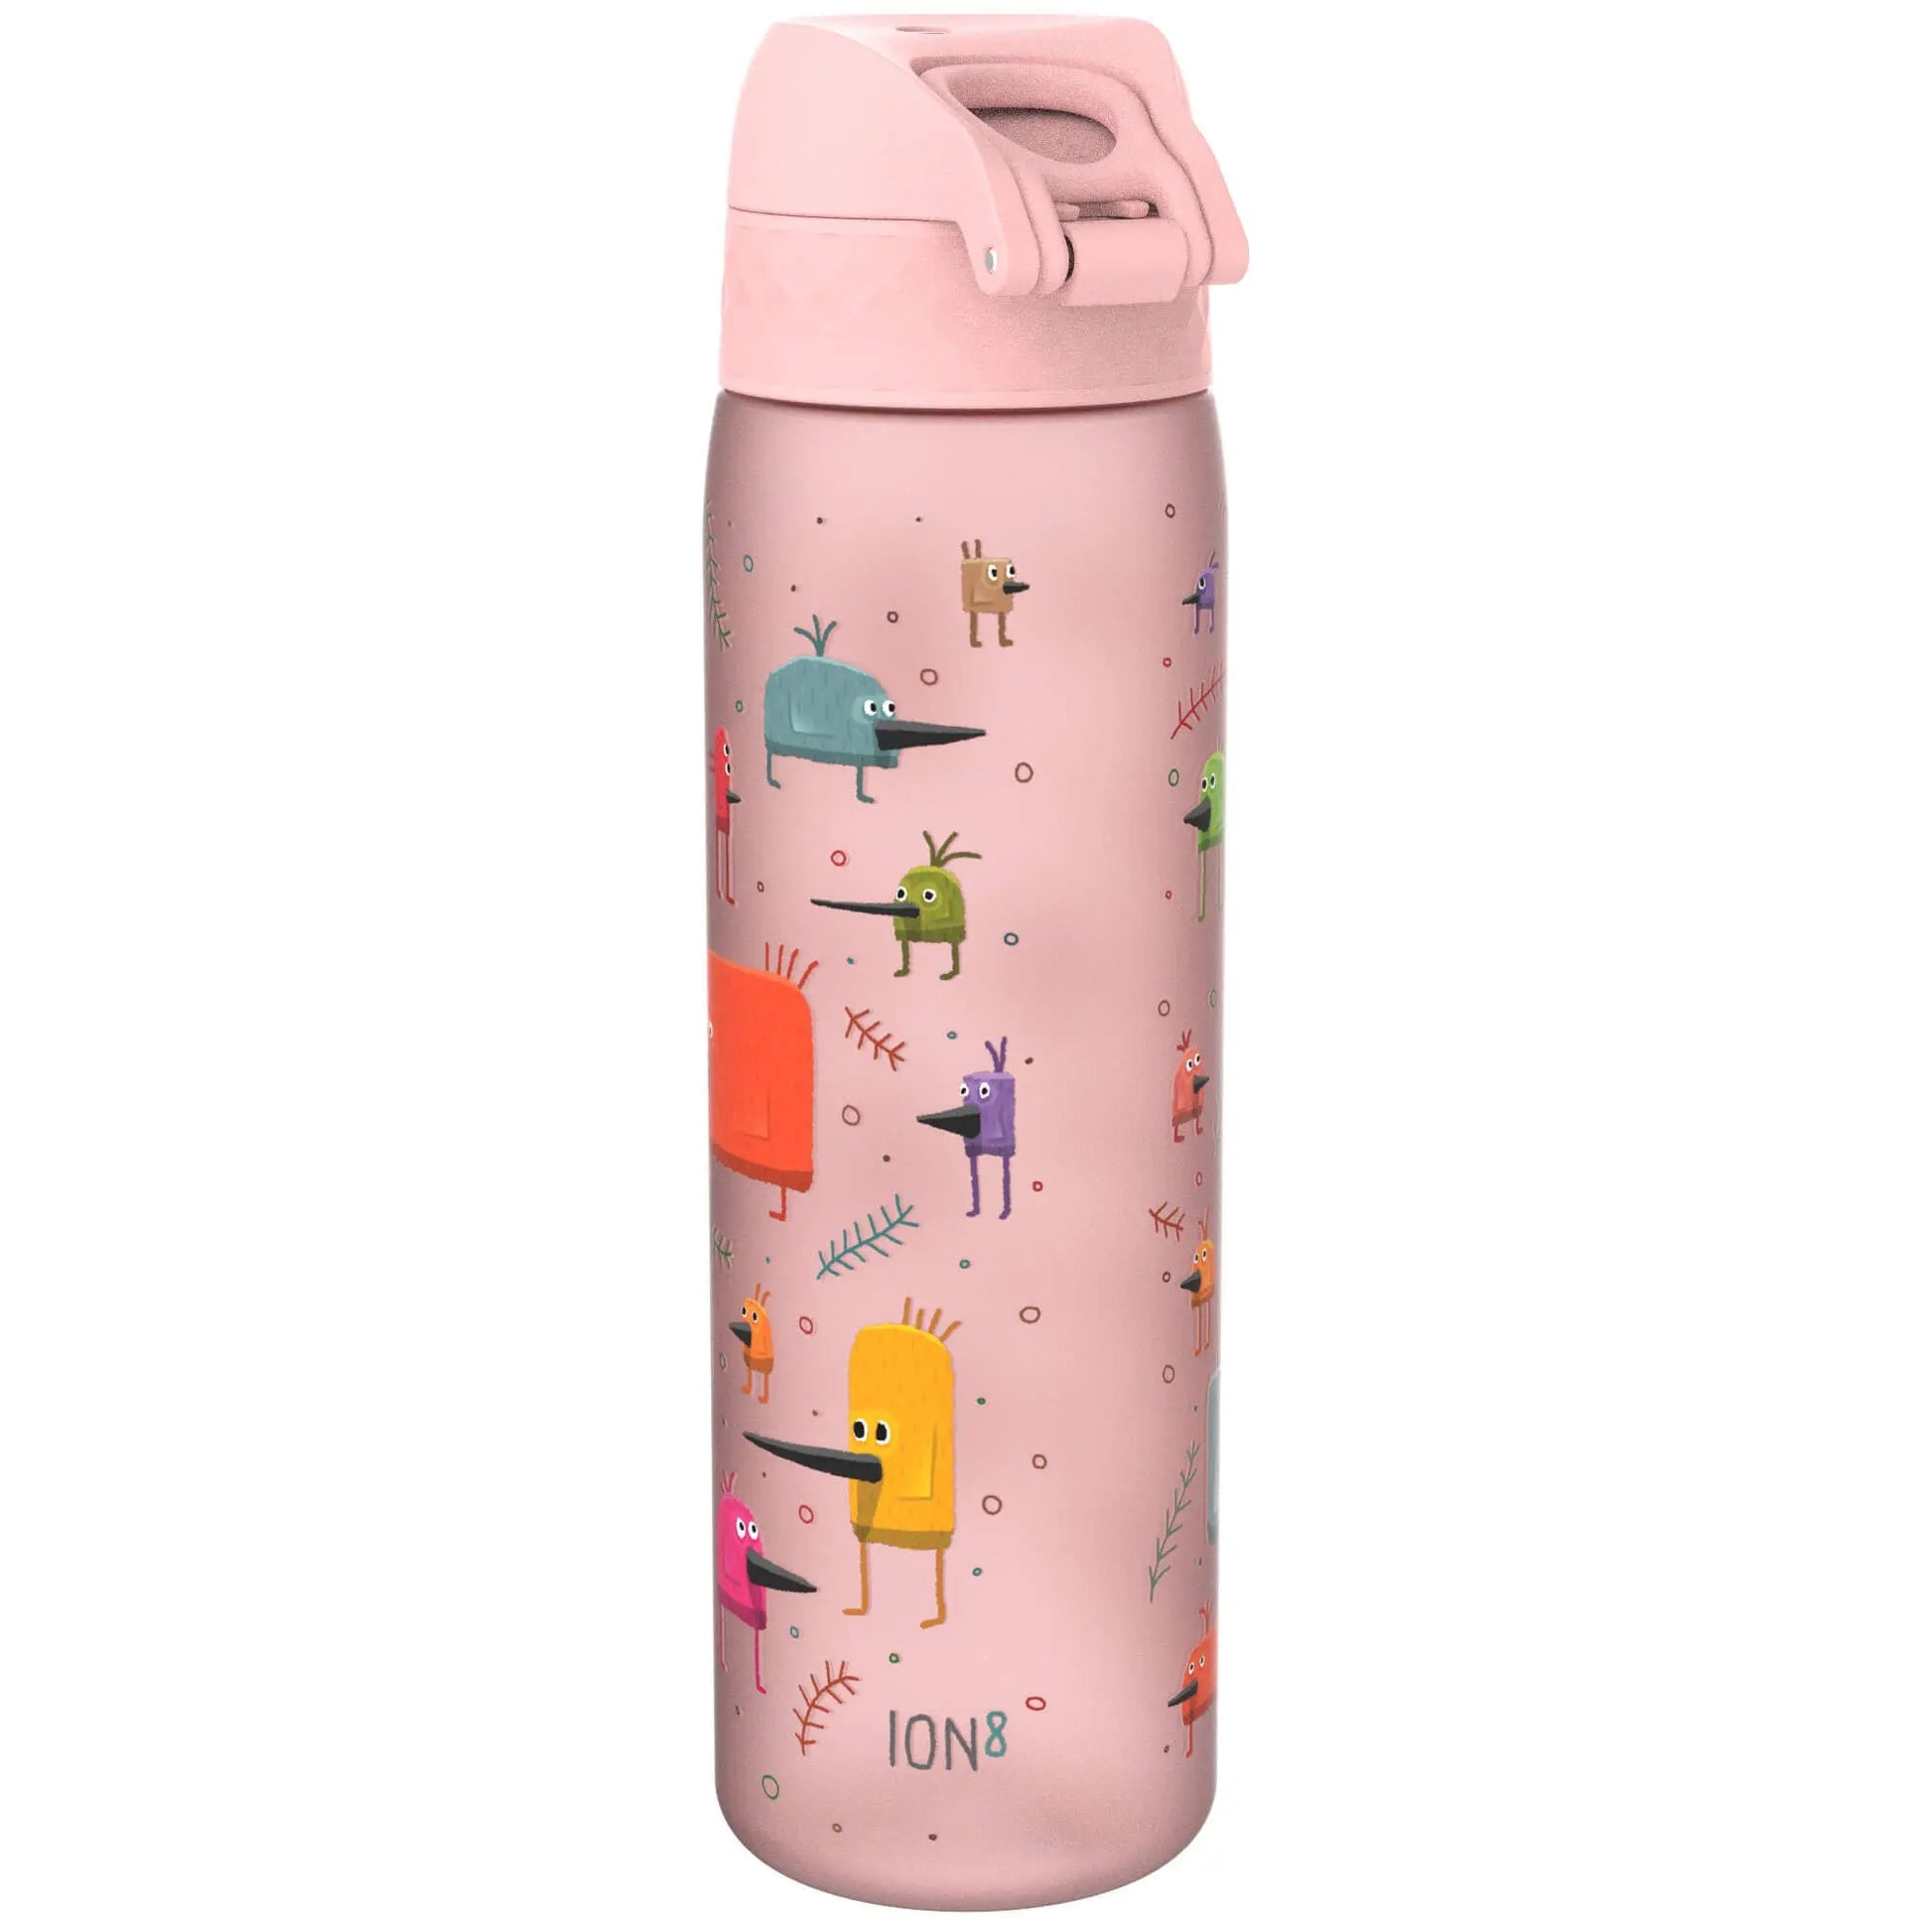 Leak Proof Slim Water Bottle, Recyclon™, Funny Birds, 500ml (18oz) Ion8